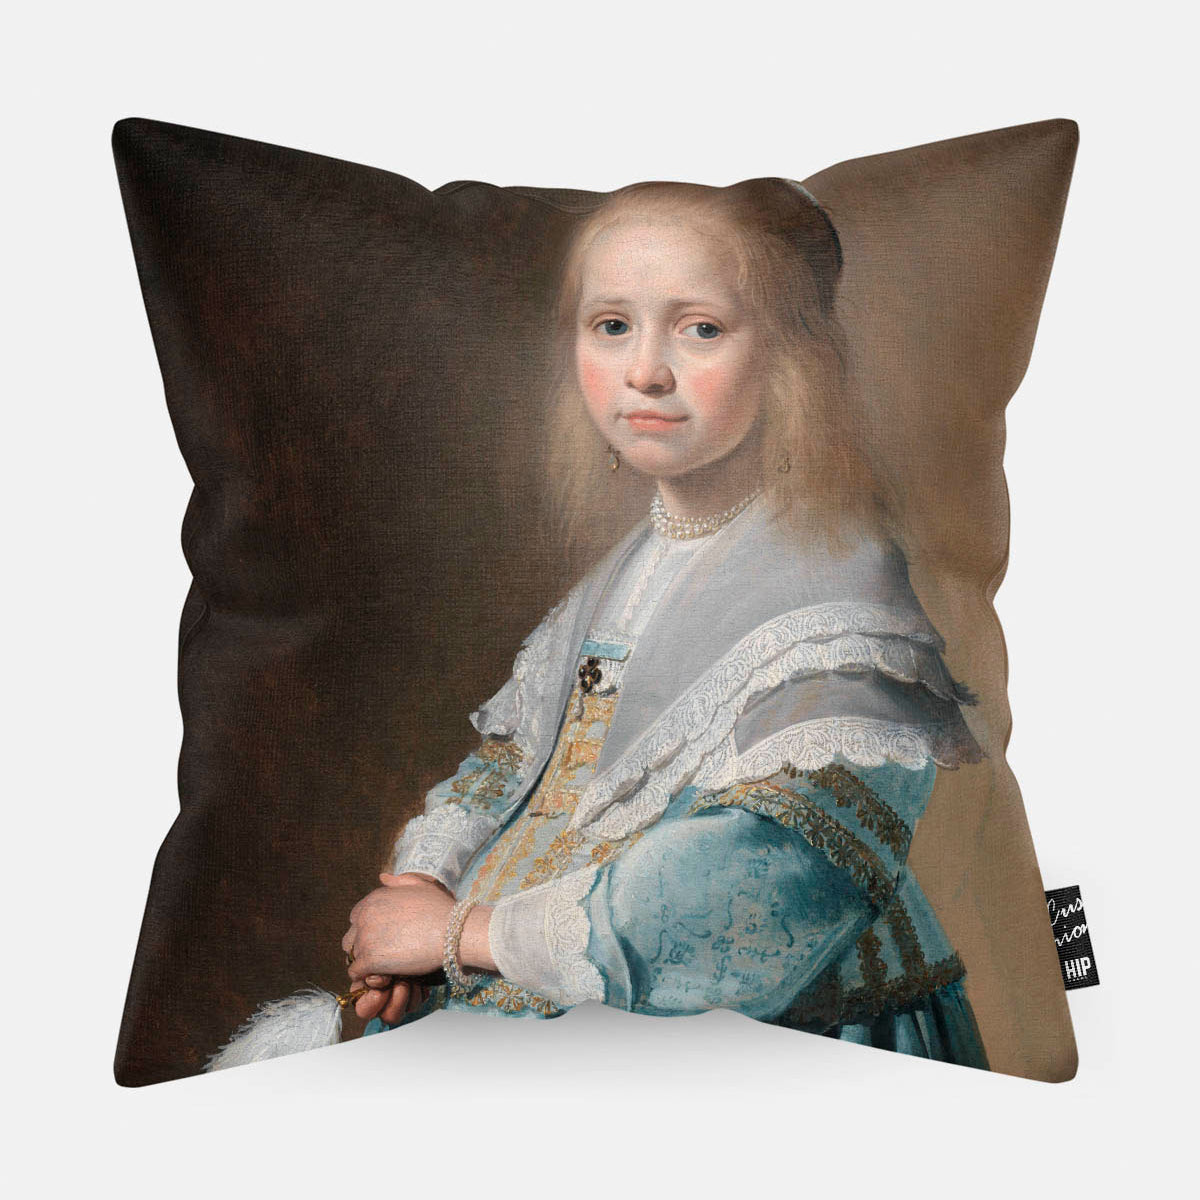 Kussen met schilderij van portret van een meisje in het blauw erop afgebeeld.